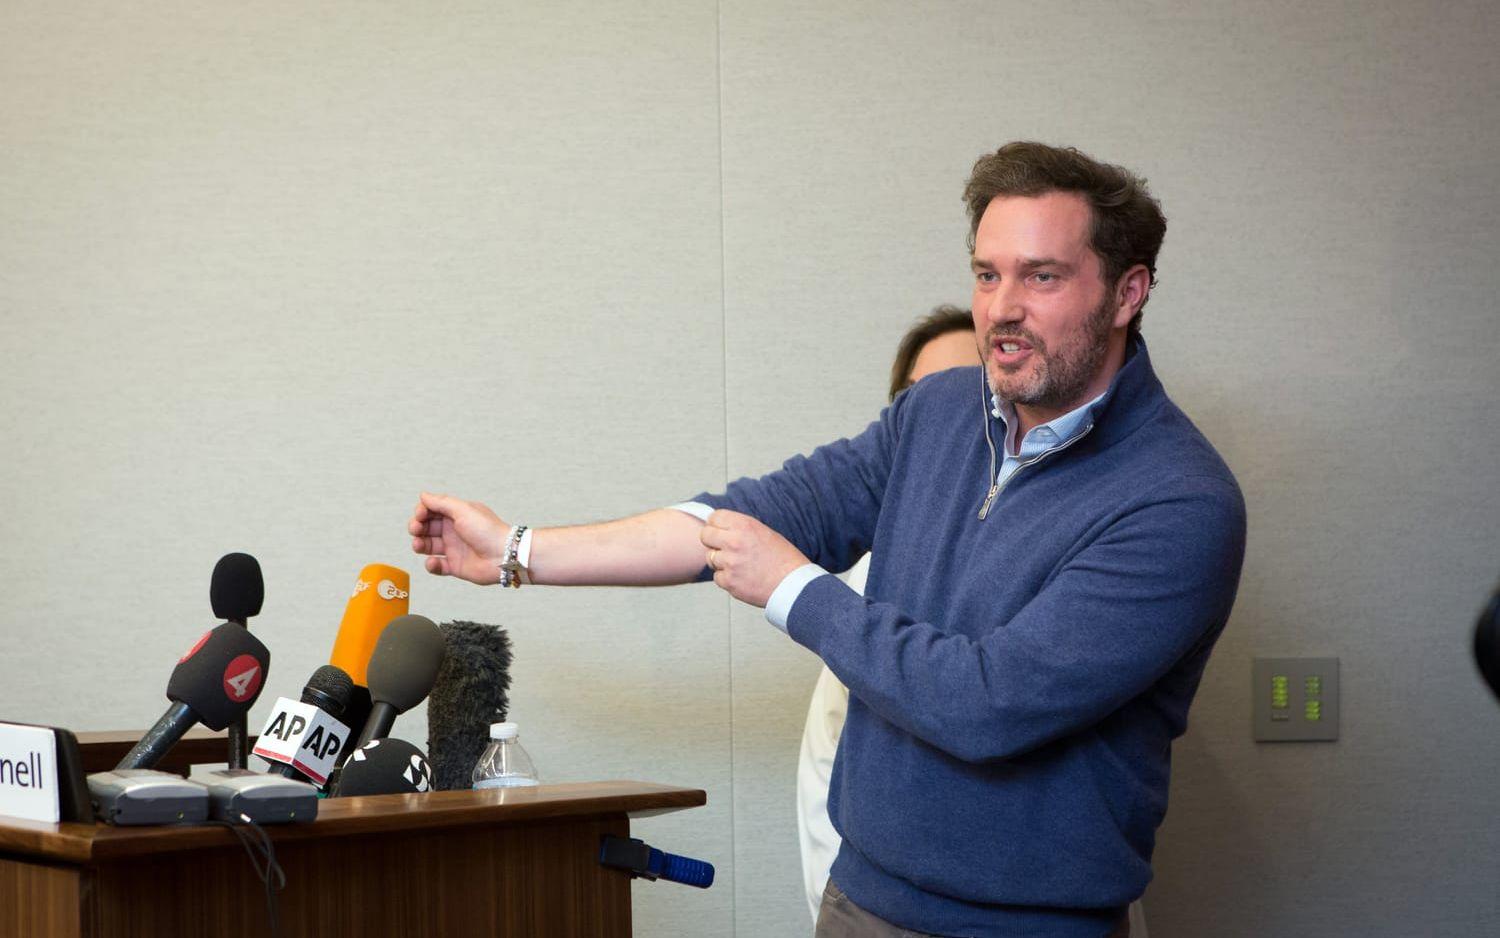 Åtta månader och en halv månad senare håller Chris O'Neill en presskonferens och visar stolt upp sin arm med den nyfödda dotterns fotavtryck.